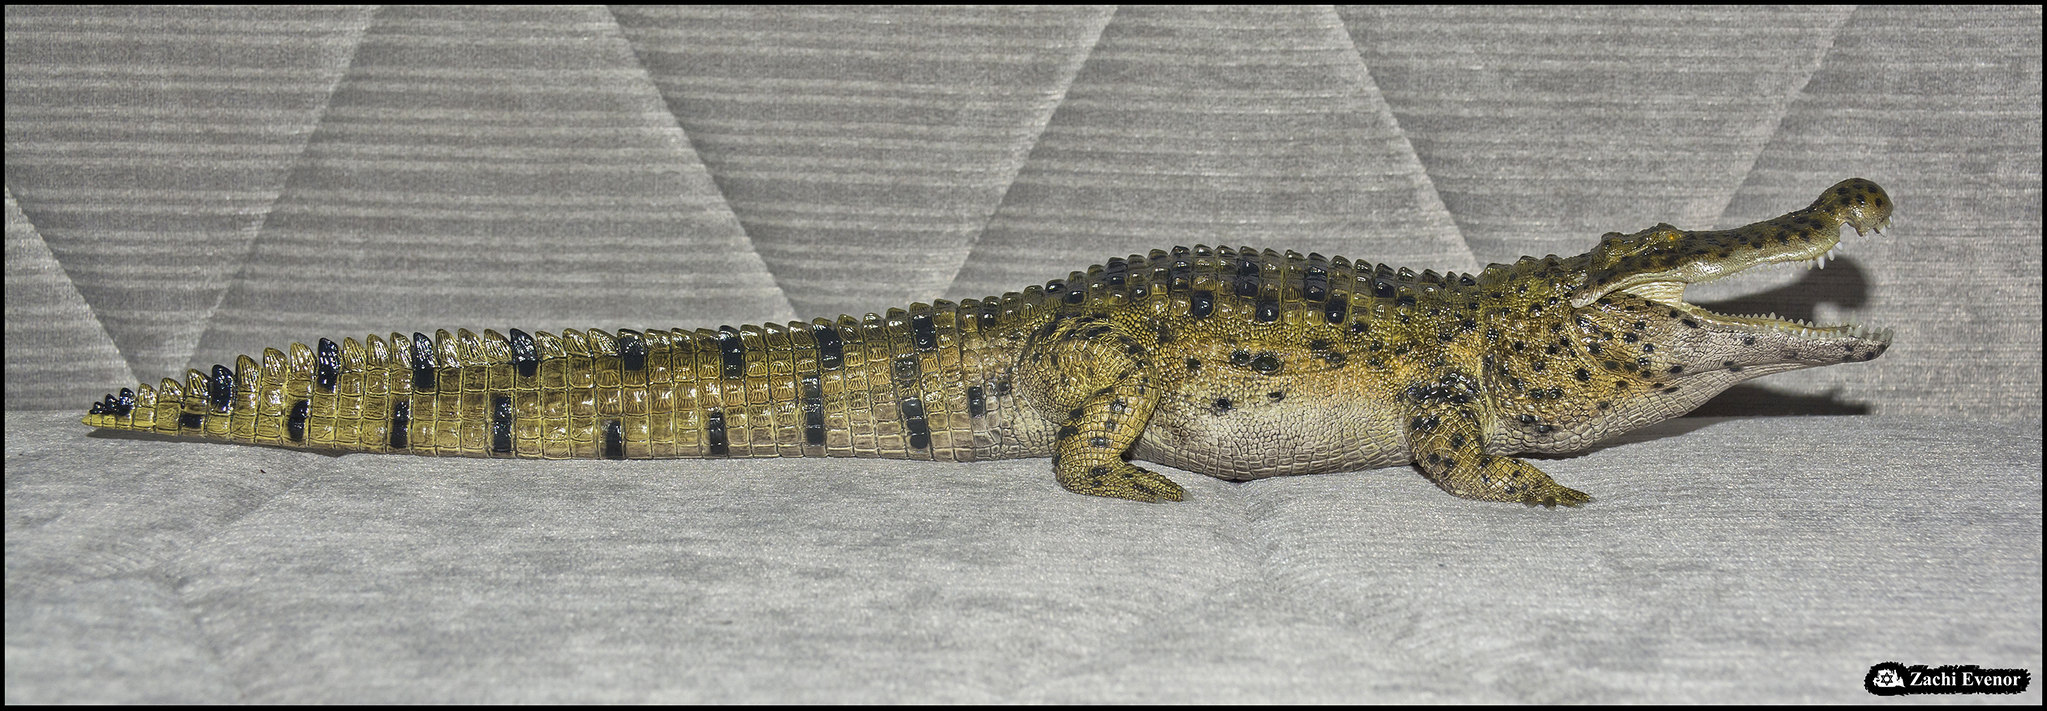 Deinosuchus - swamp variant by Rebor 2023-02-16 IZE-2